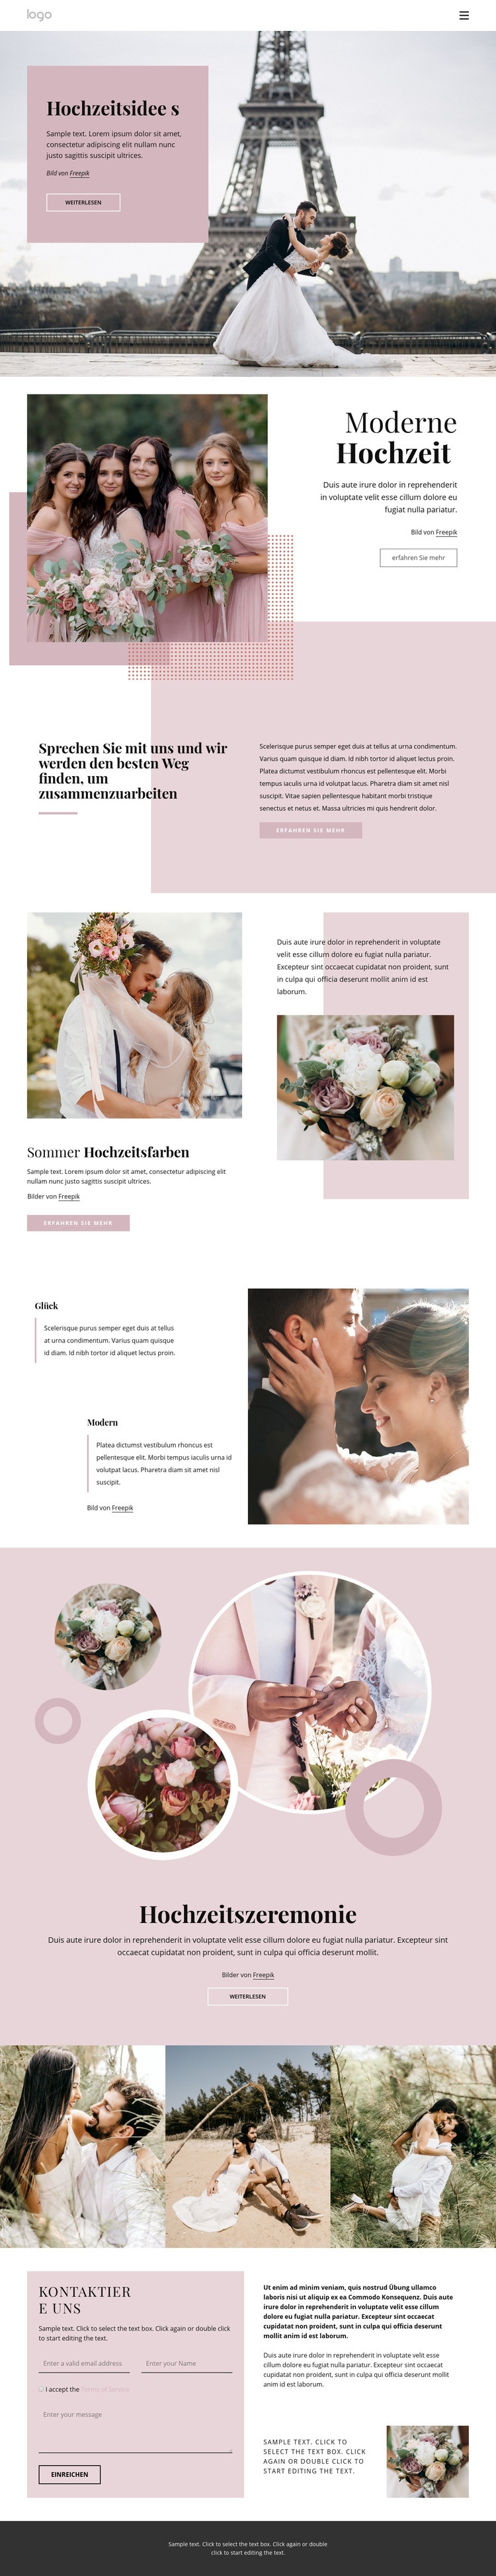 Einzigartige Hochzeitszeremonie Website design